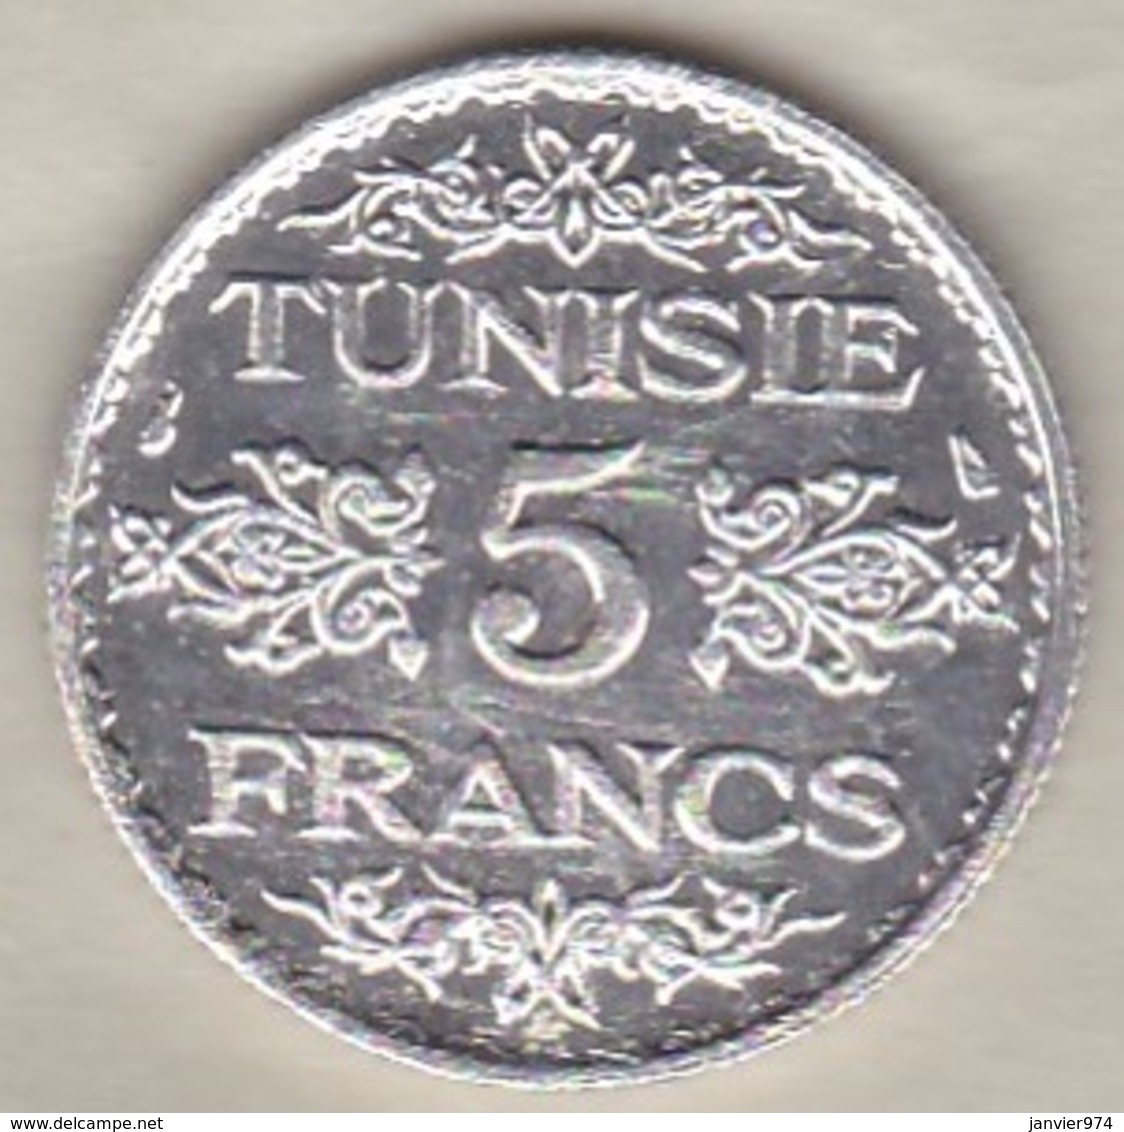 TUNISIE. 5 FRANCS 1936 (AH 1355). ARGENT / SILVER - Tunisie